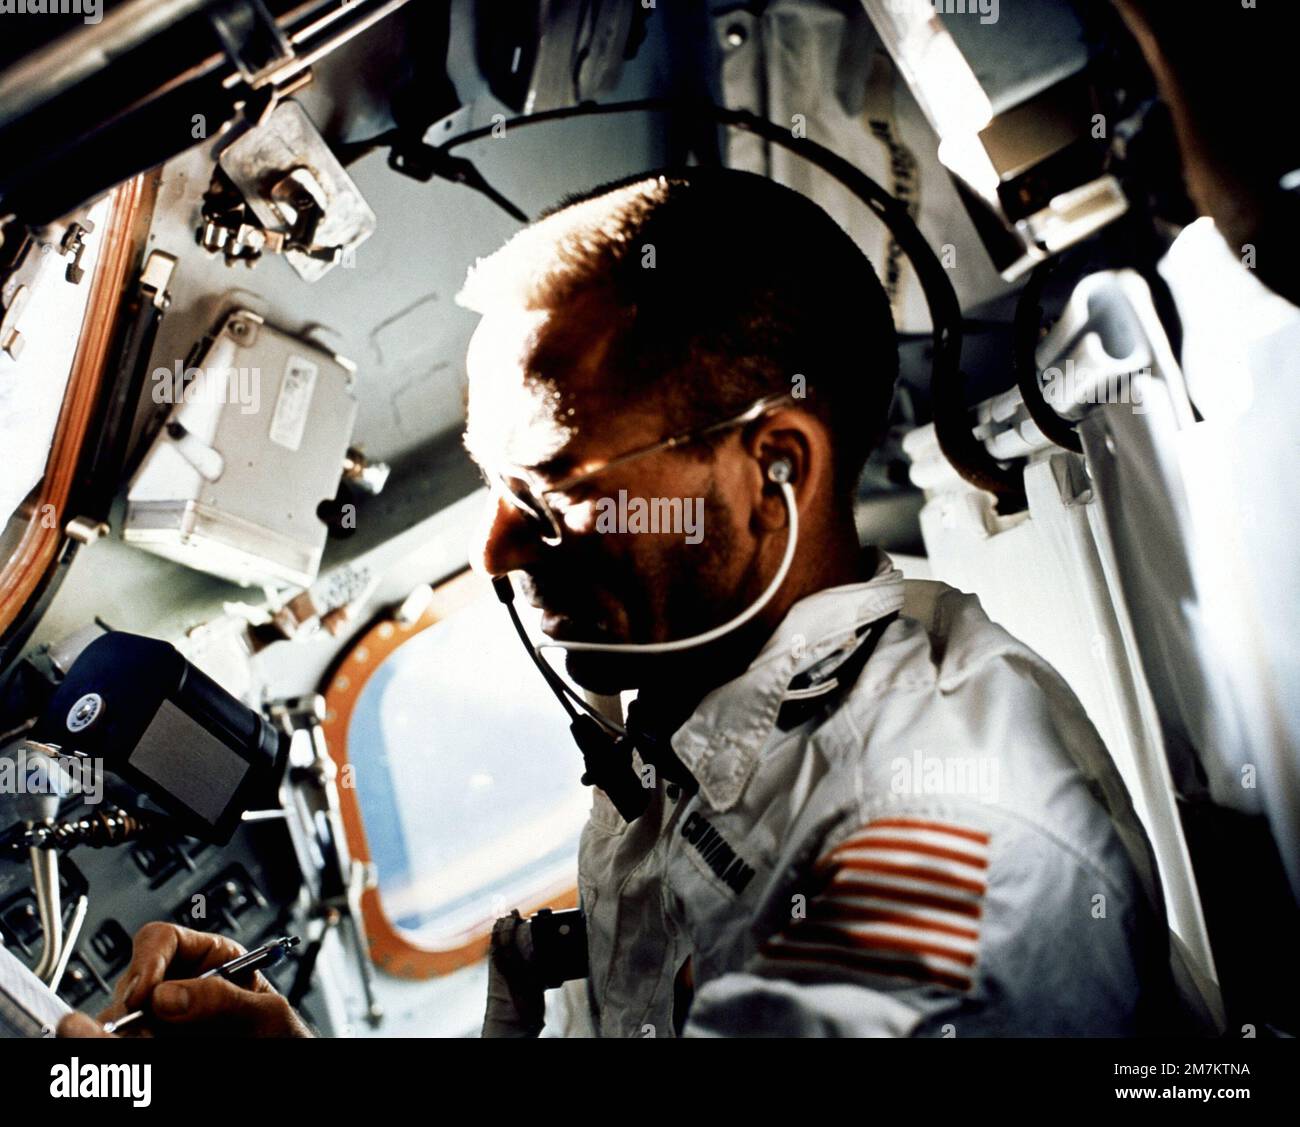 L'astronaute Walter Cunningham, pilote du module lunaire Apollo 7, écrit avec un stylo spatial tout en effectuant des tâches de vol le neuvième jour de la mission Apollo 7. Un magazine de film de 70 mm Hasselbald flotte juste au-dessus de la main droite de Cunningham dans l'environnement de gravité zéro de l'engin spatial. Pays : inconnu Banque D'Images